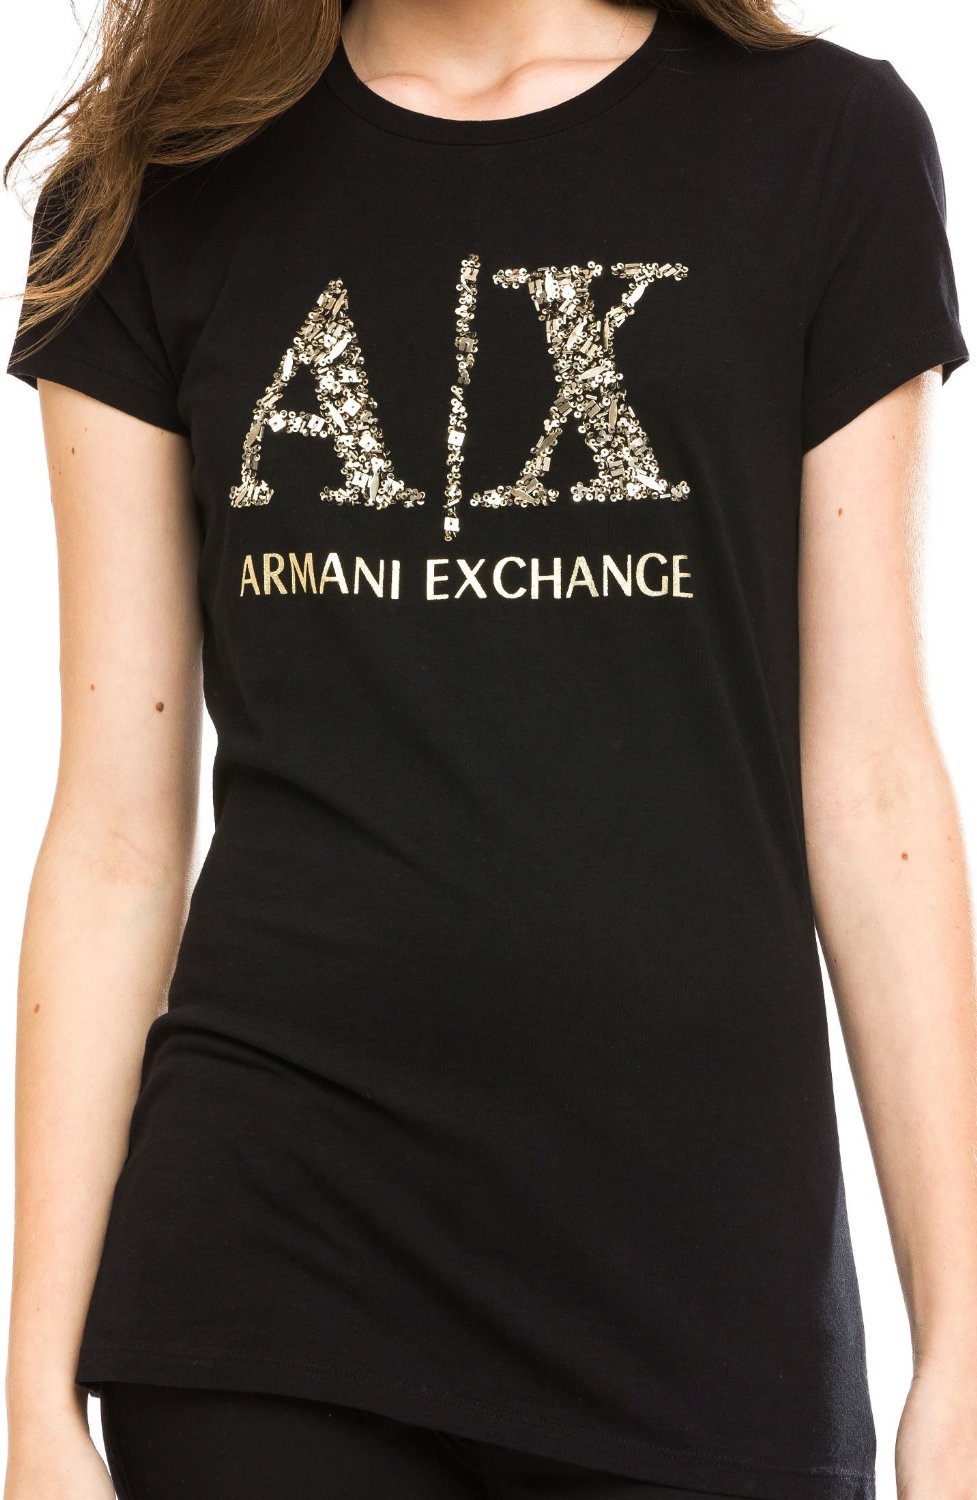 armani exchange tops womens